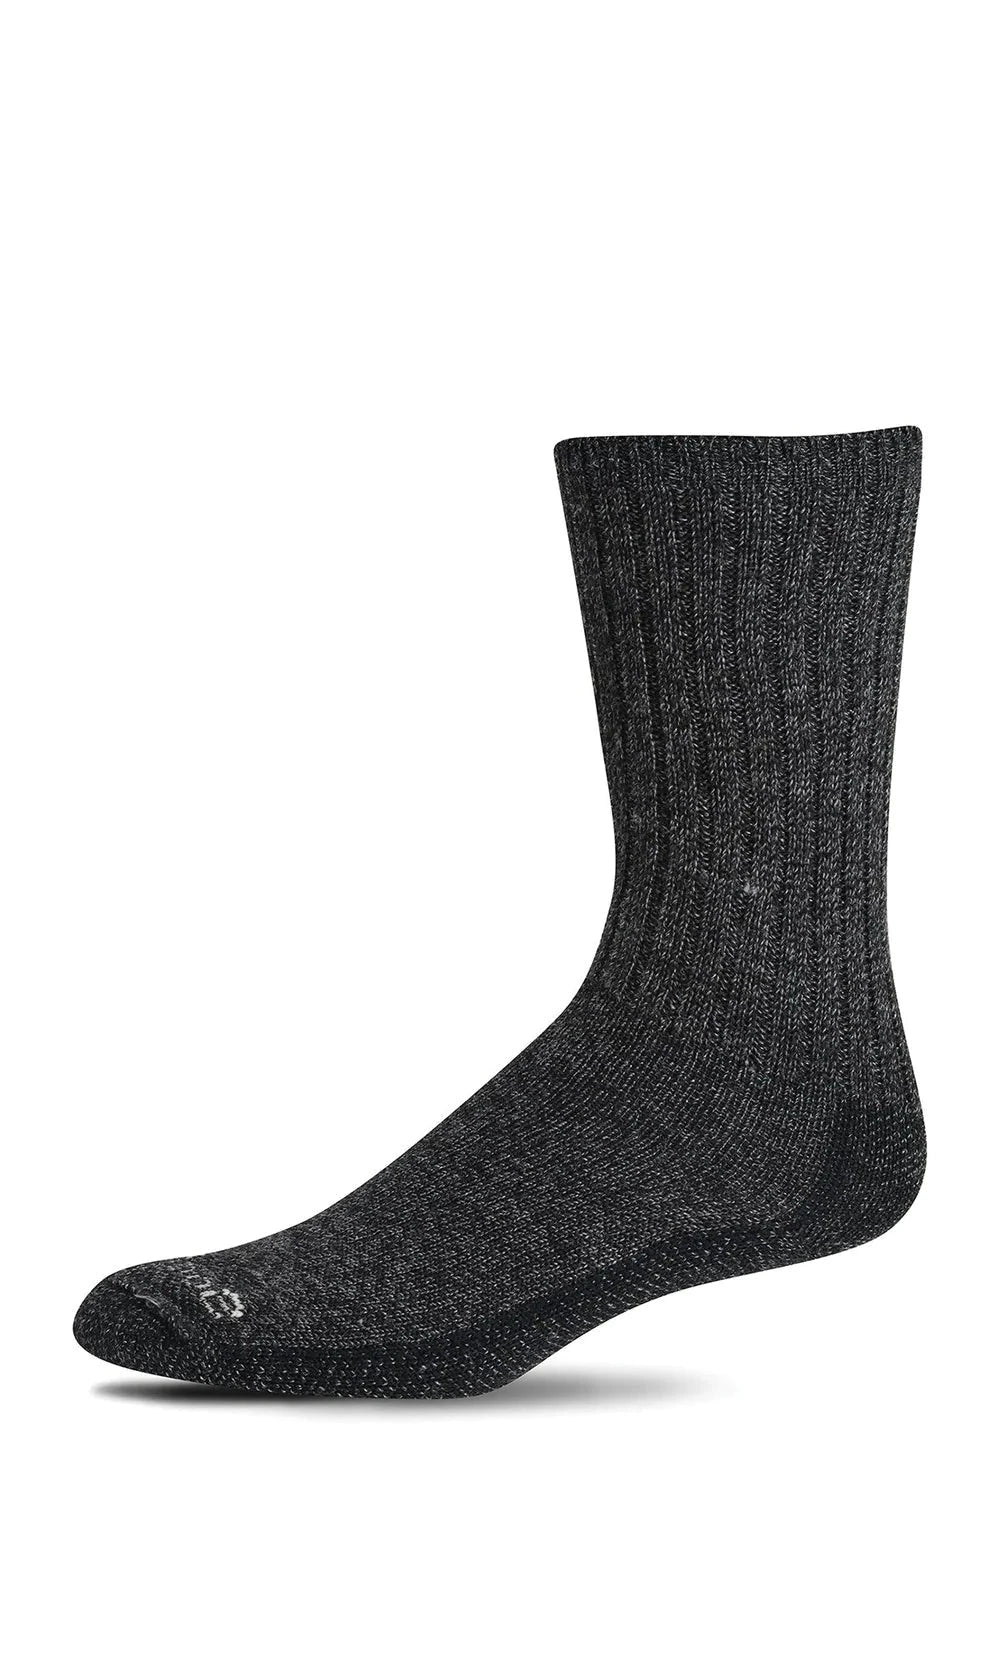 Big Easy | Relaxed Fit | Men | Black/Multi - Socks - Sockwell